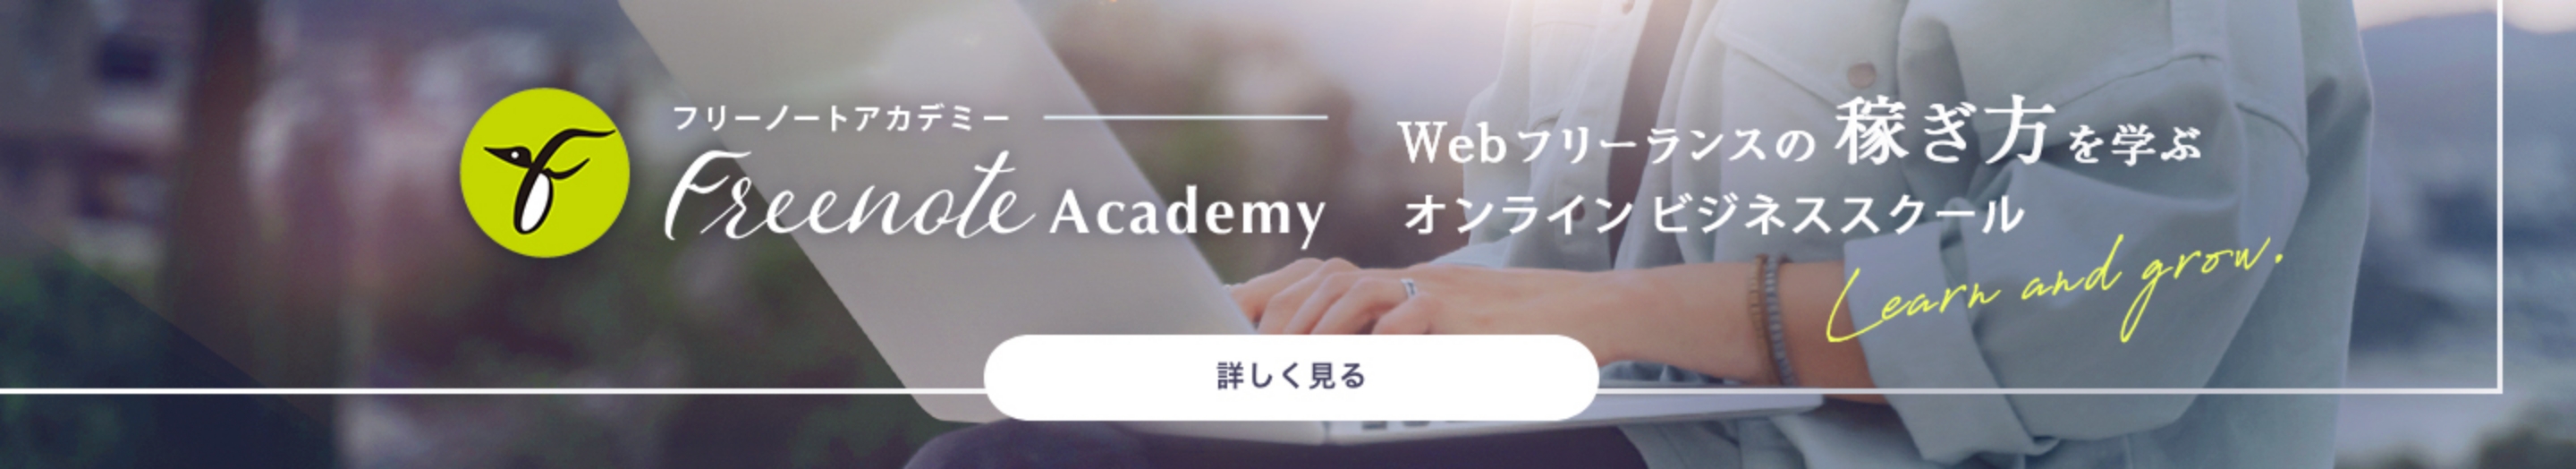 Freenote Academy Webフリーランスの稼ぎ方を学ぶオンラインビジネススクール